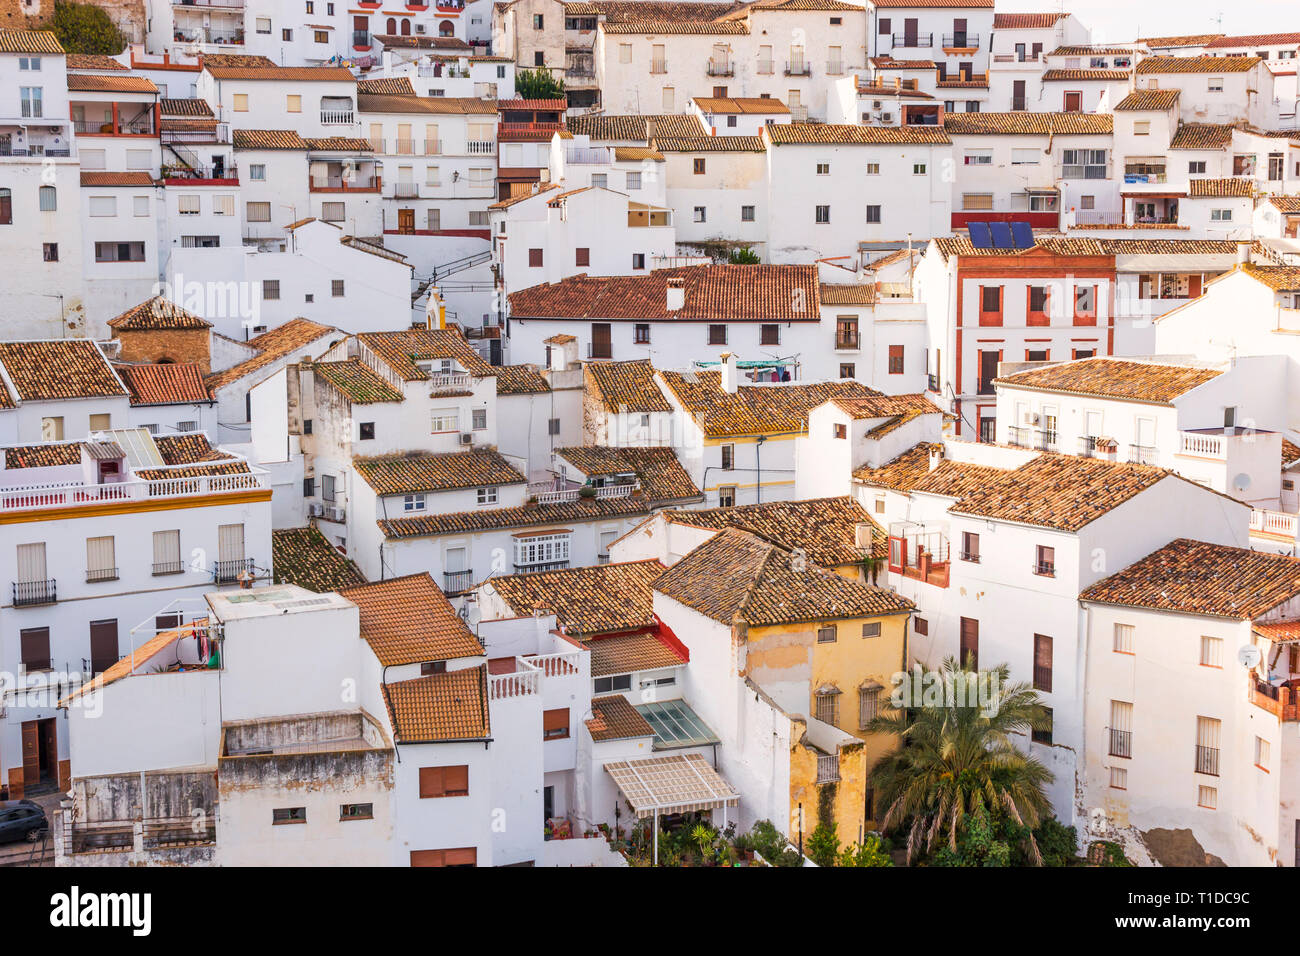 Almodovar del Rio, Cordoba Province, Andalusia, Spain.  View of village. Stock Photo